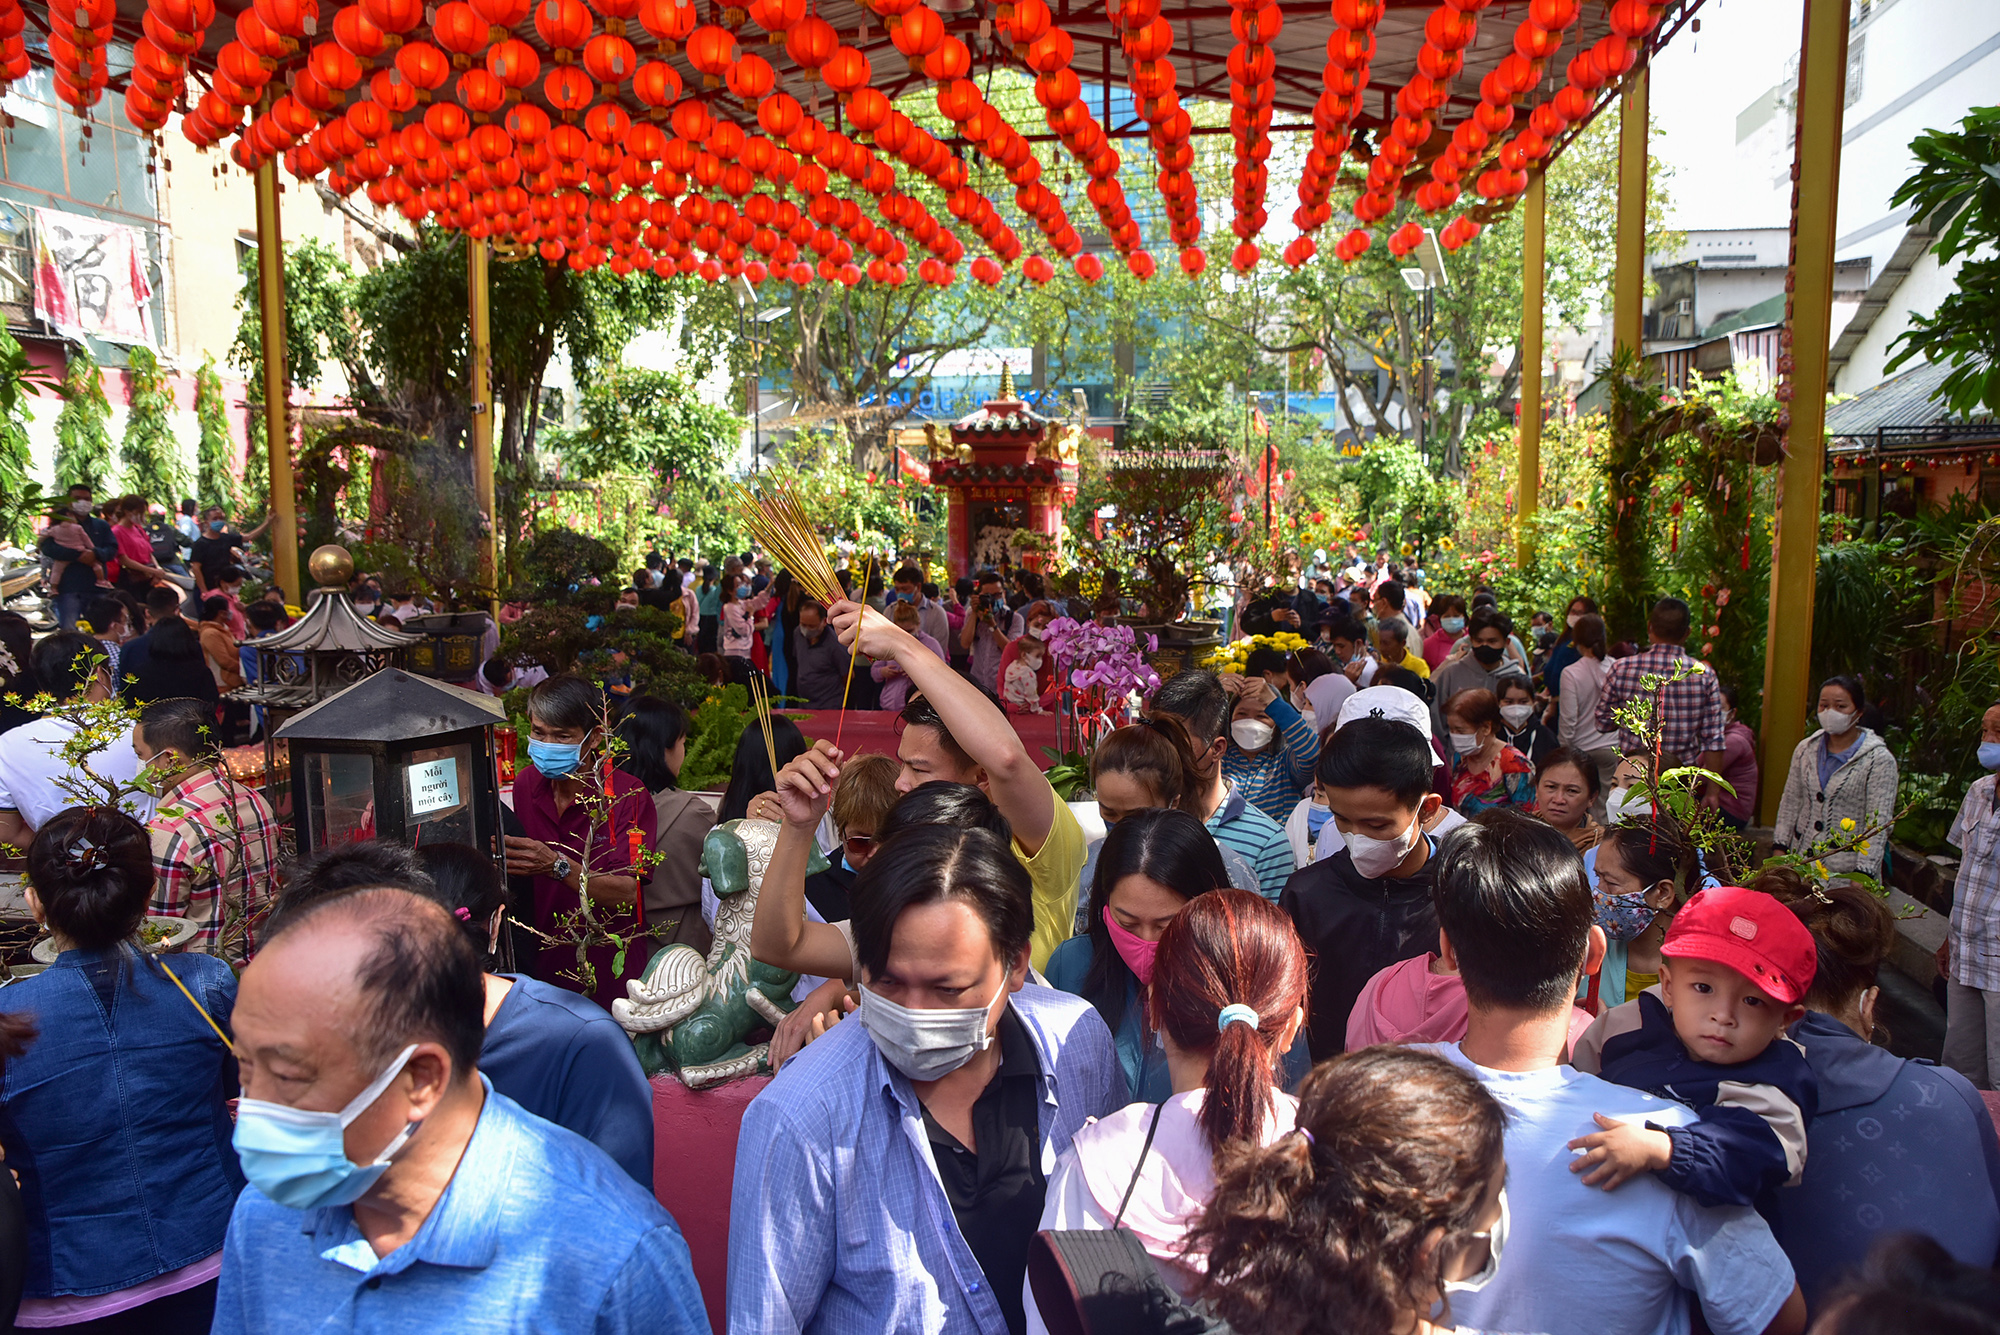 Sáng 30/1 (mùng 9 tháng Giêng), rất đông người dân TP.HCM đến chùa Phước Hải (hay còn gọi là chùa Ngọc Hoàng) cúng vía Ngọc Hoàng (vía Trời) để cầu bình an, sức khoẻ và may mắn trong năm mới.